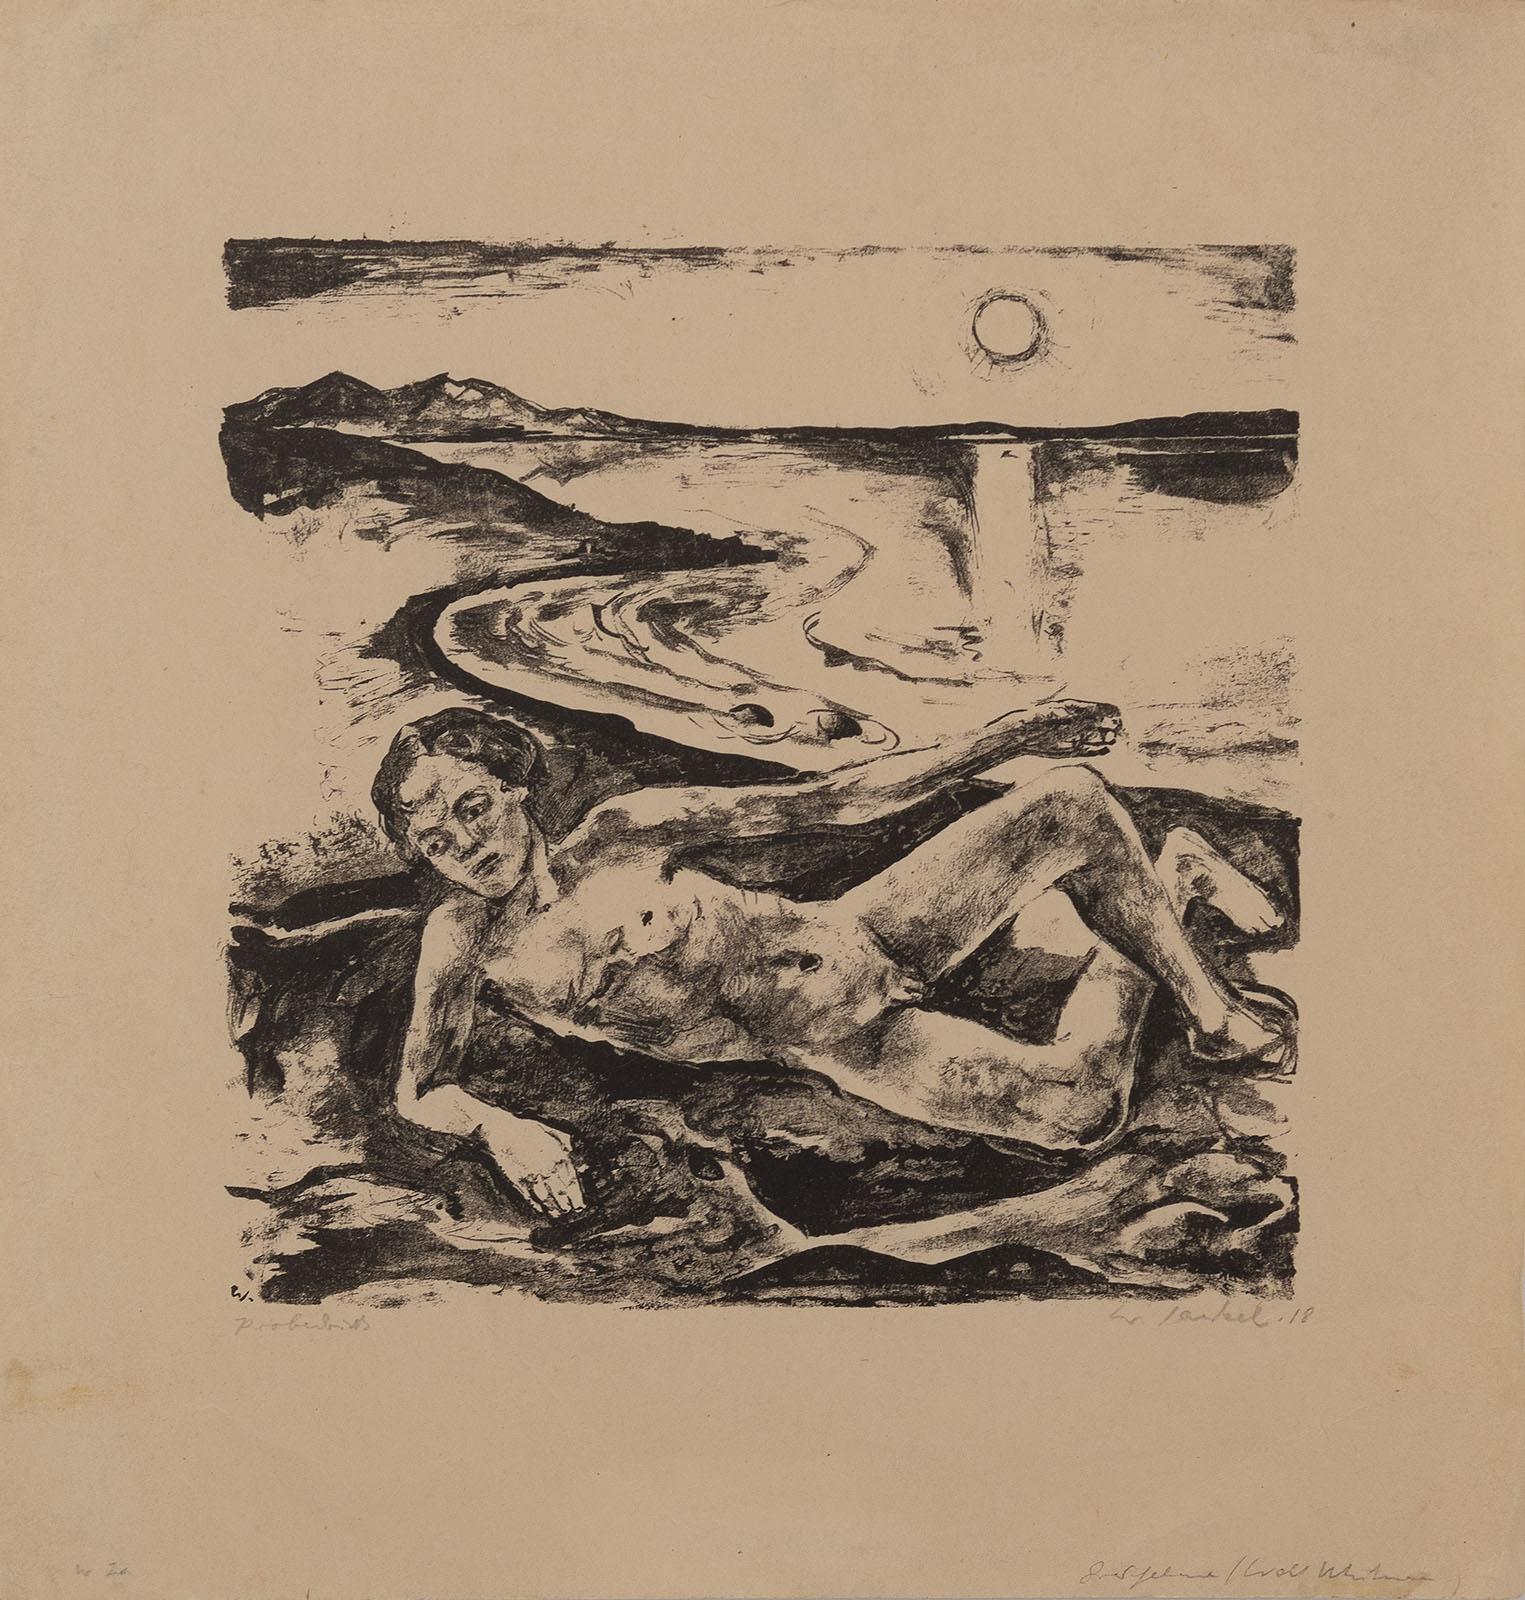 Willy Jaeckel Nude Print – Am Strand liegender Knabenakt